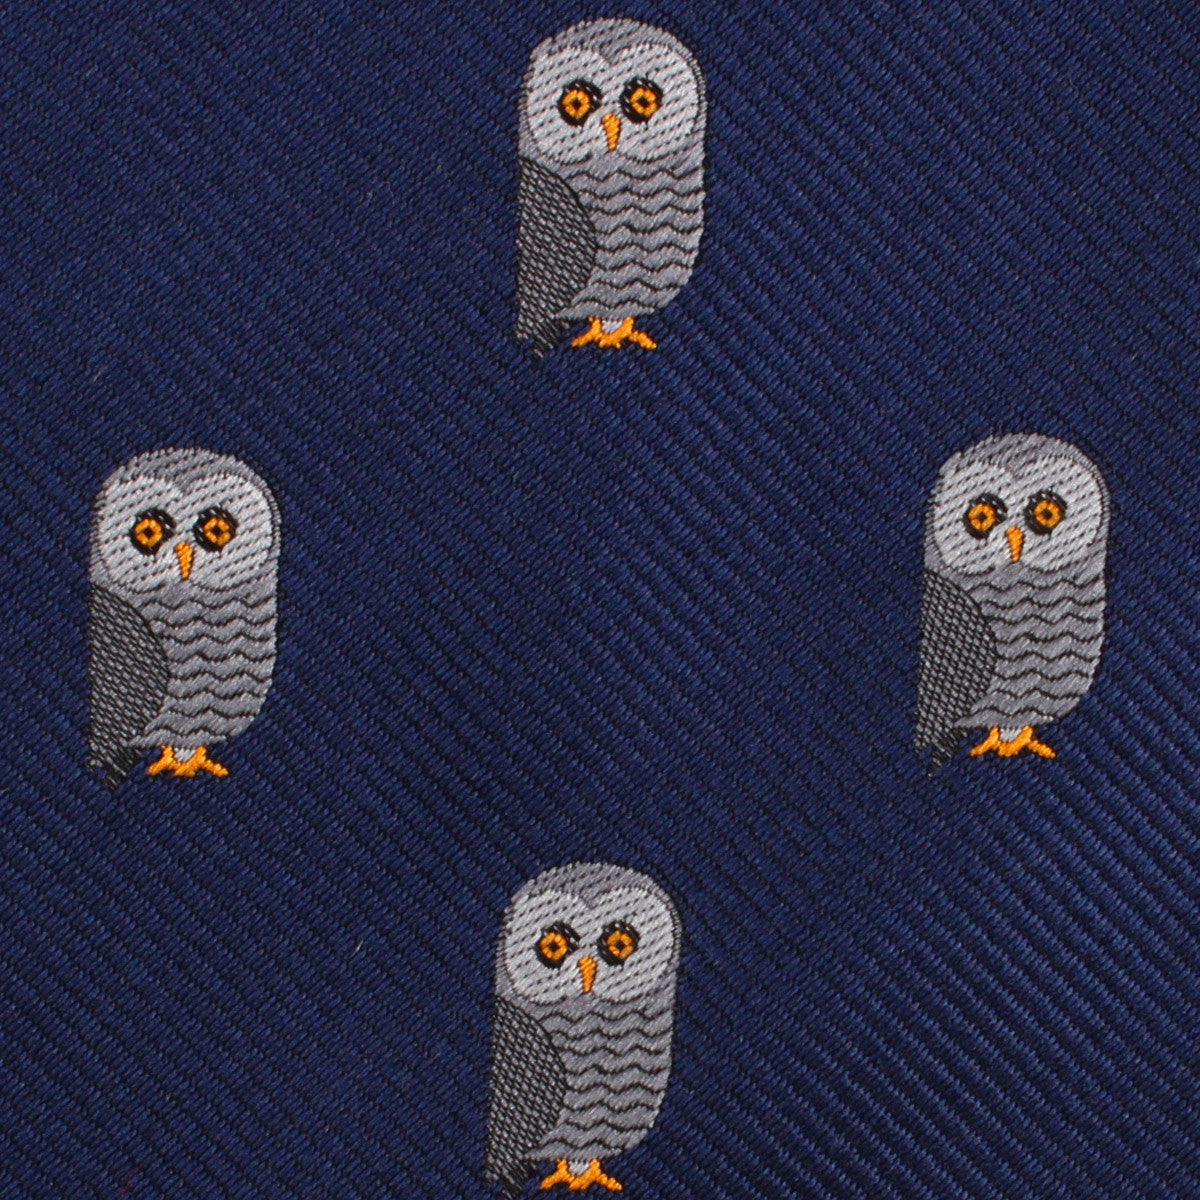 Southern Grey Owl Fabric Skinny Tie